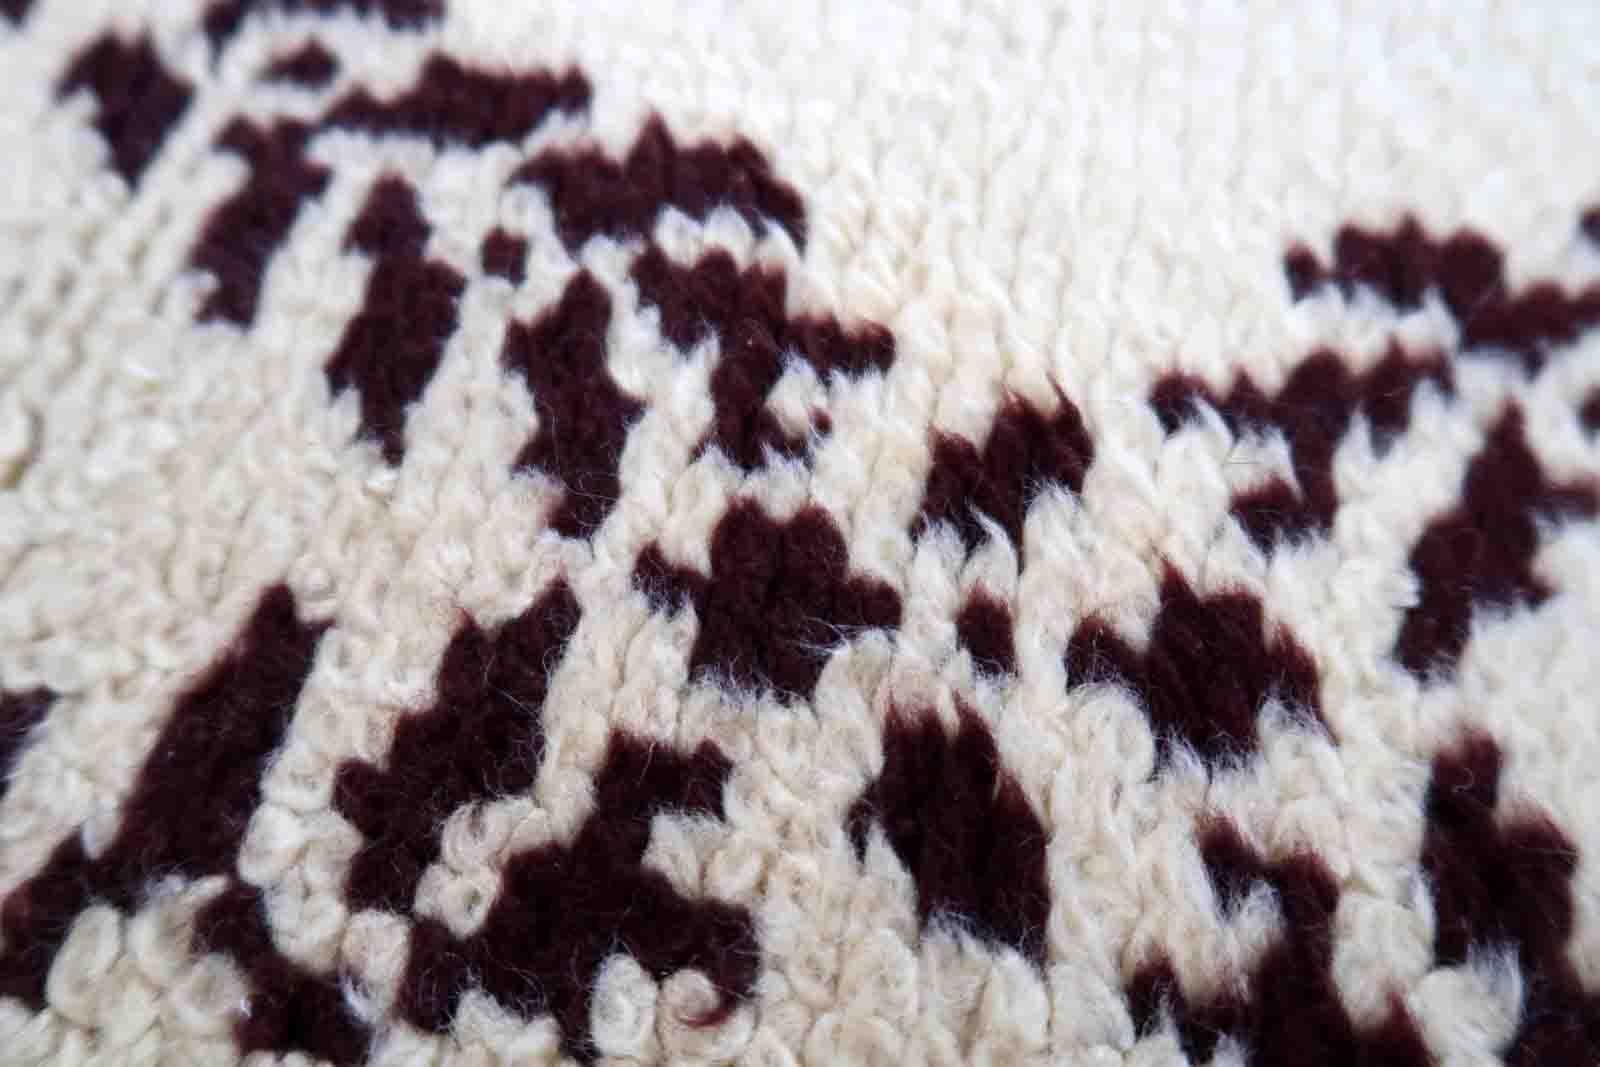 Vintage Französisch Savonnerie Teppich in leuchtend rosa Farbe. Der Teppich wurde Ende des 20. Jahrhunderts aus Wolle hergestellt. Es befindet sich in einem guten Originalzustand.

-zustand: original gut,

-etwa: 1960er Jahre,

-größe: 2,5' x